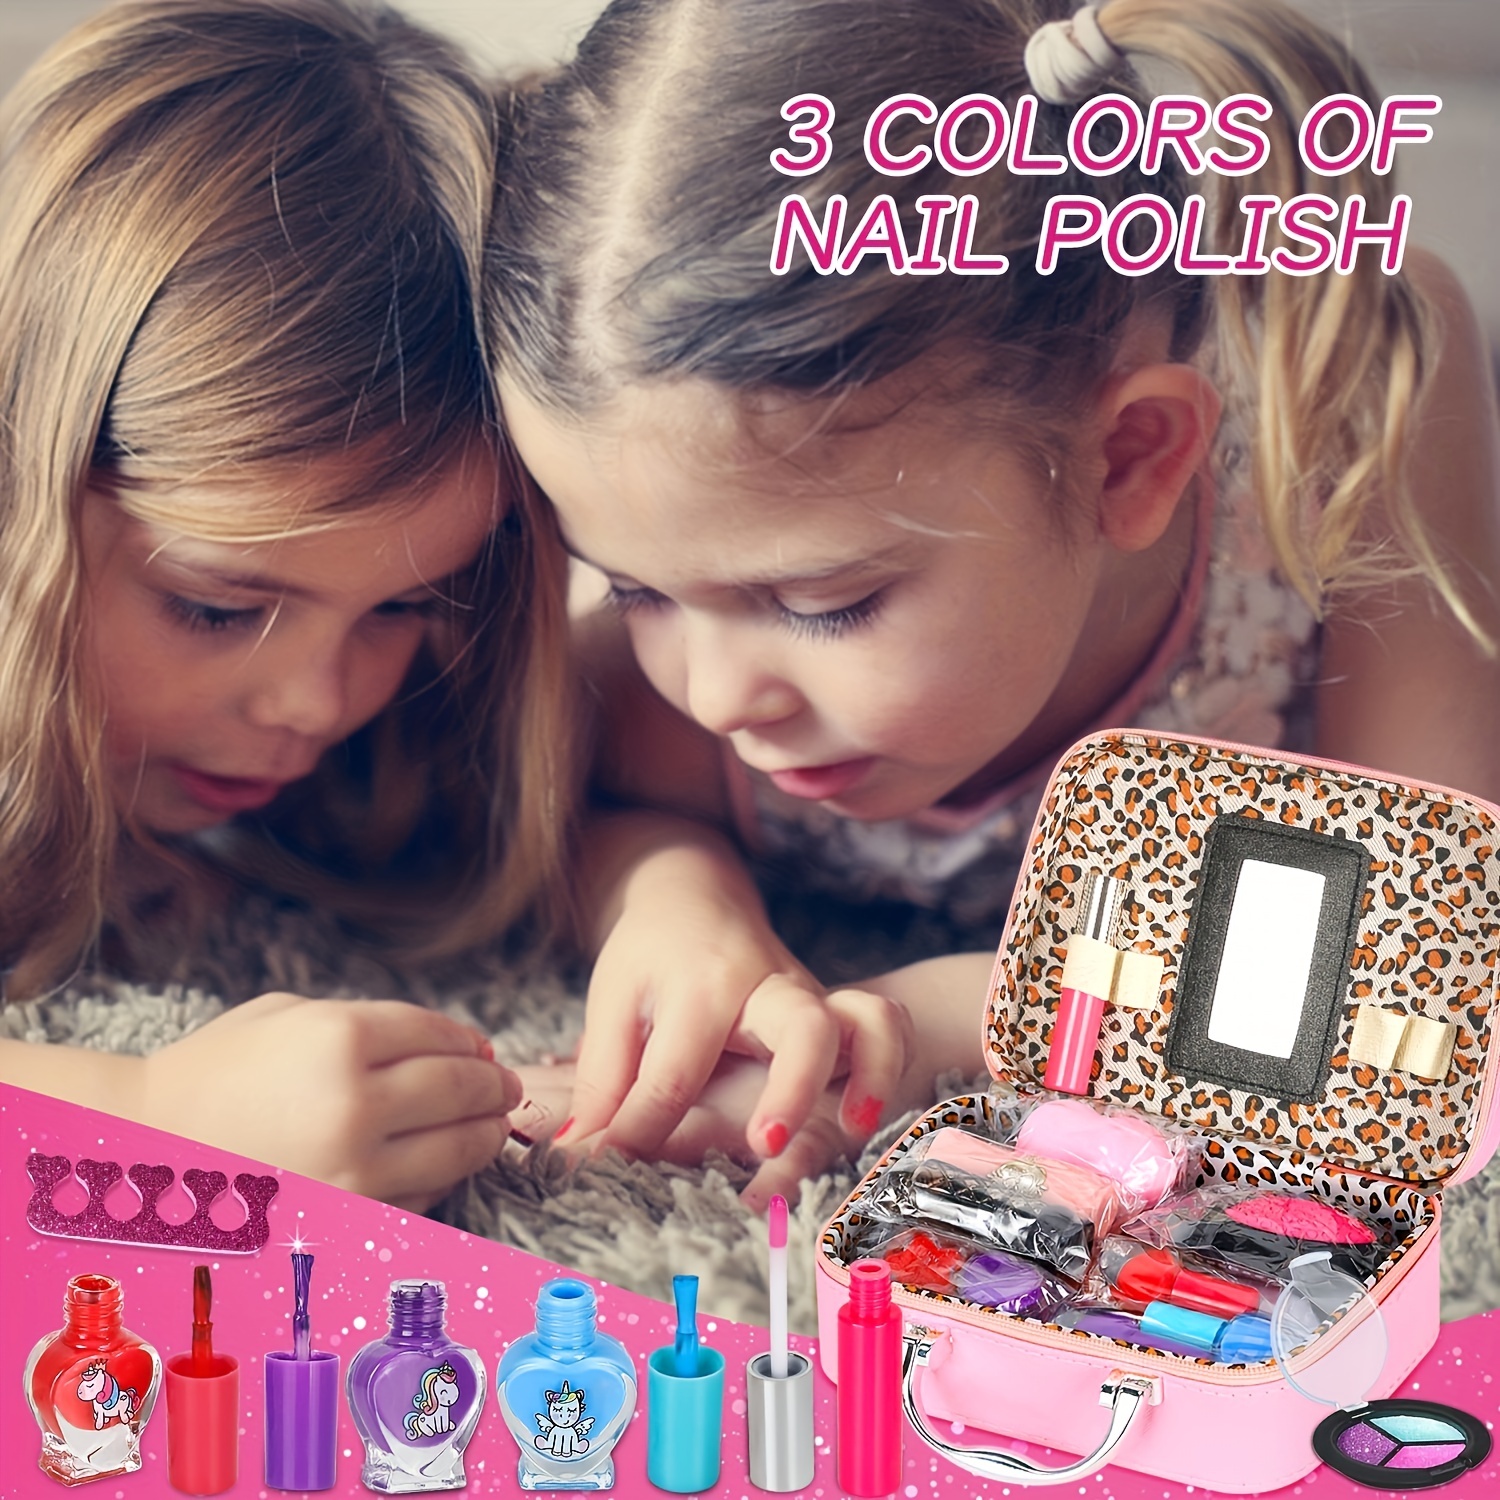 Kit de maquillage pour enfants, lavable, sûr, non toxique, cadeaux